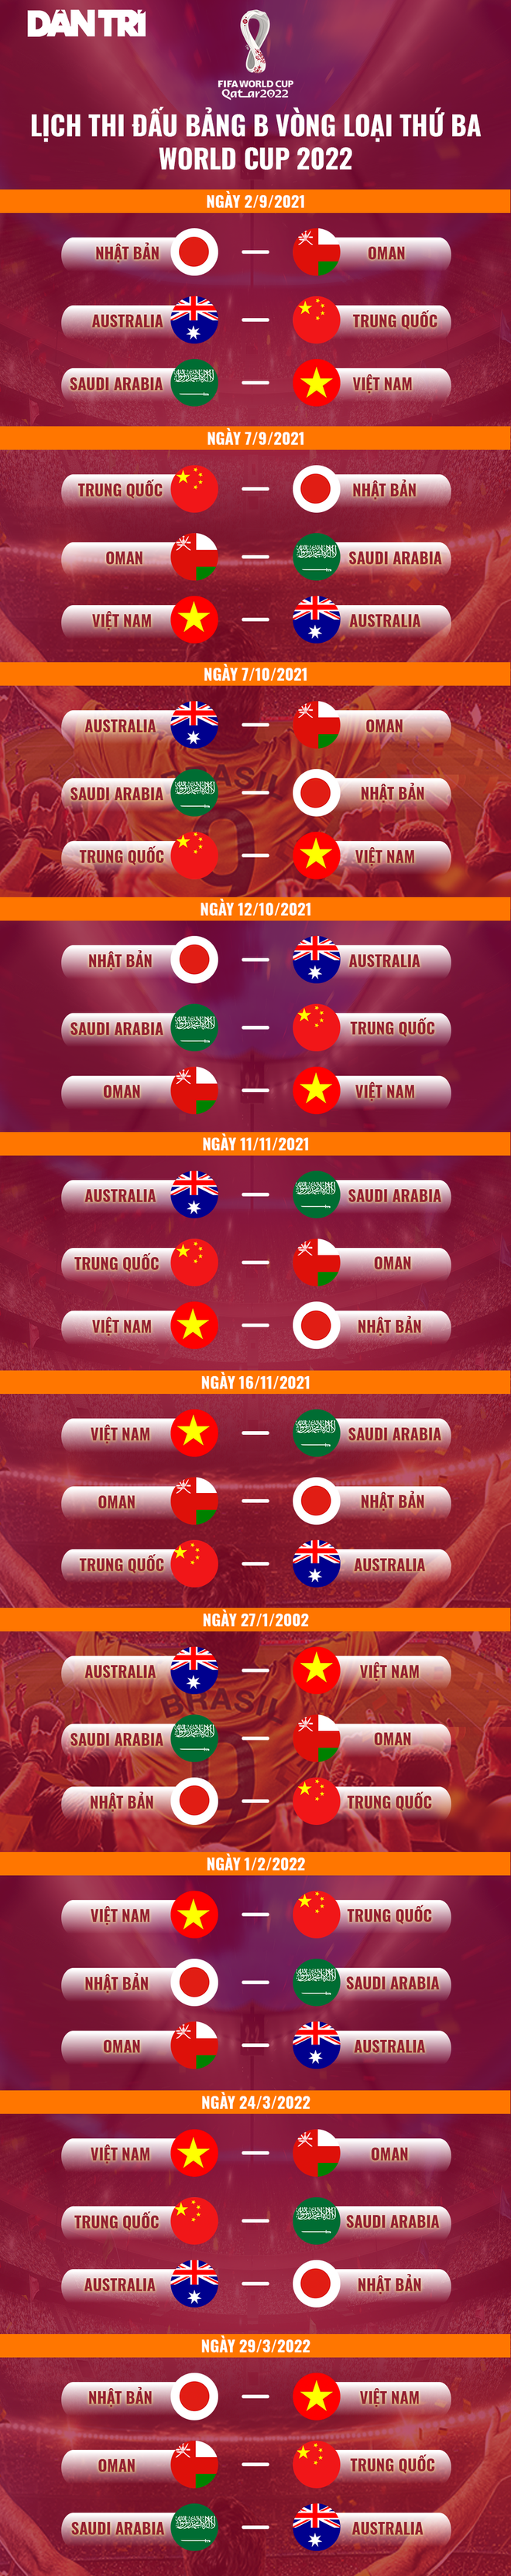 FIFA chốt phương án, đội tuyển Việt Nam có thể phải đá sân trung lập - 3